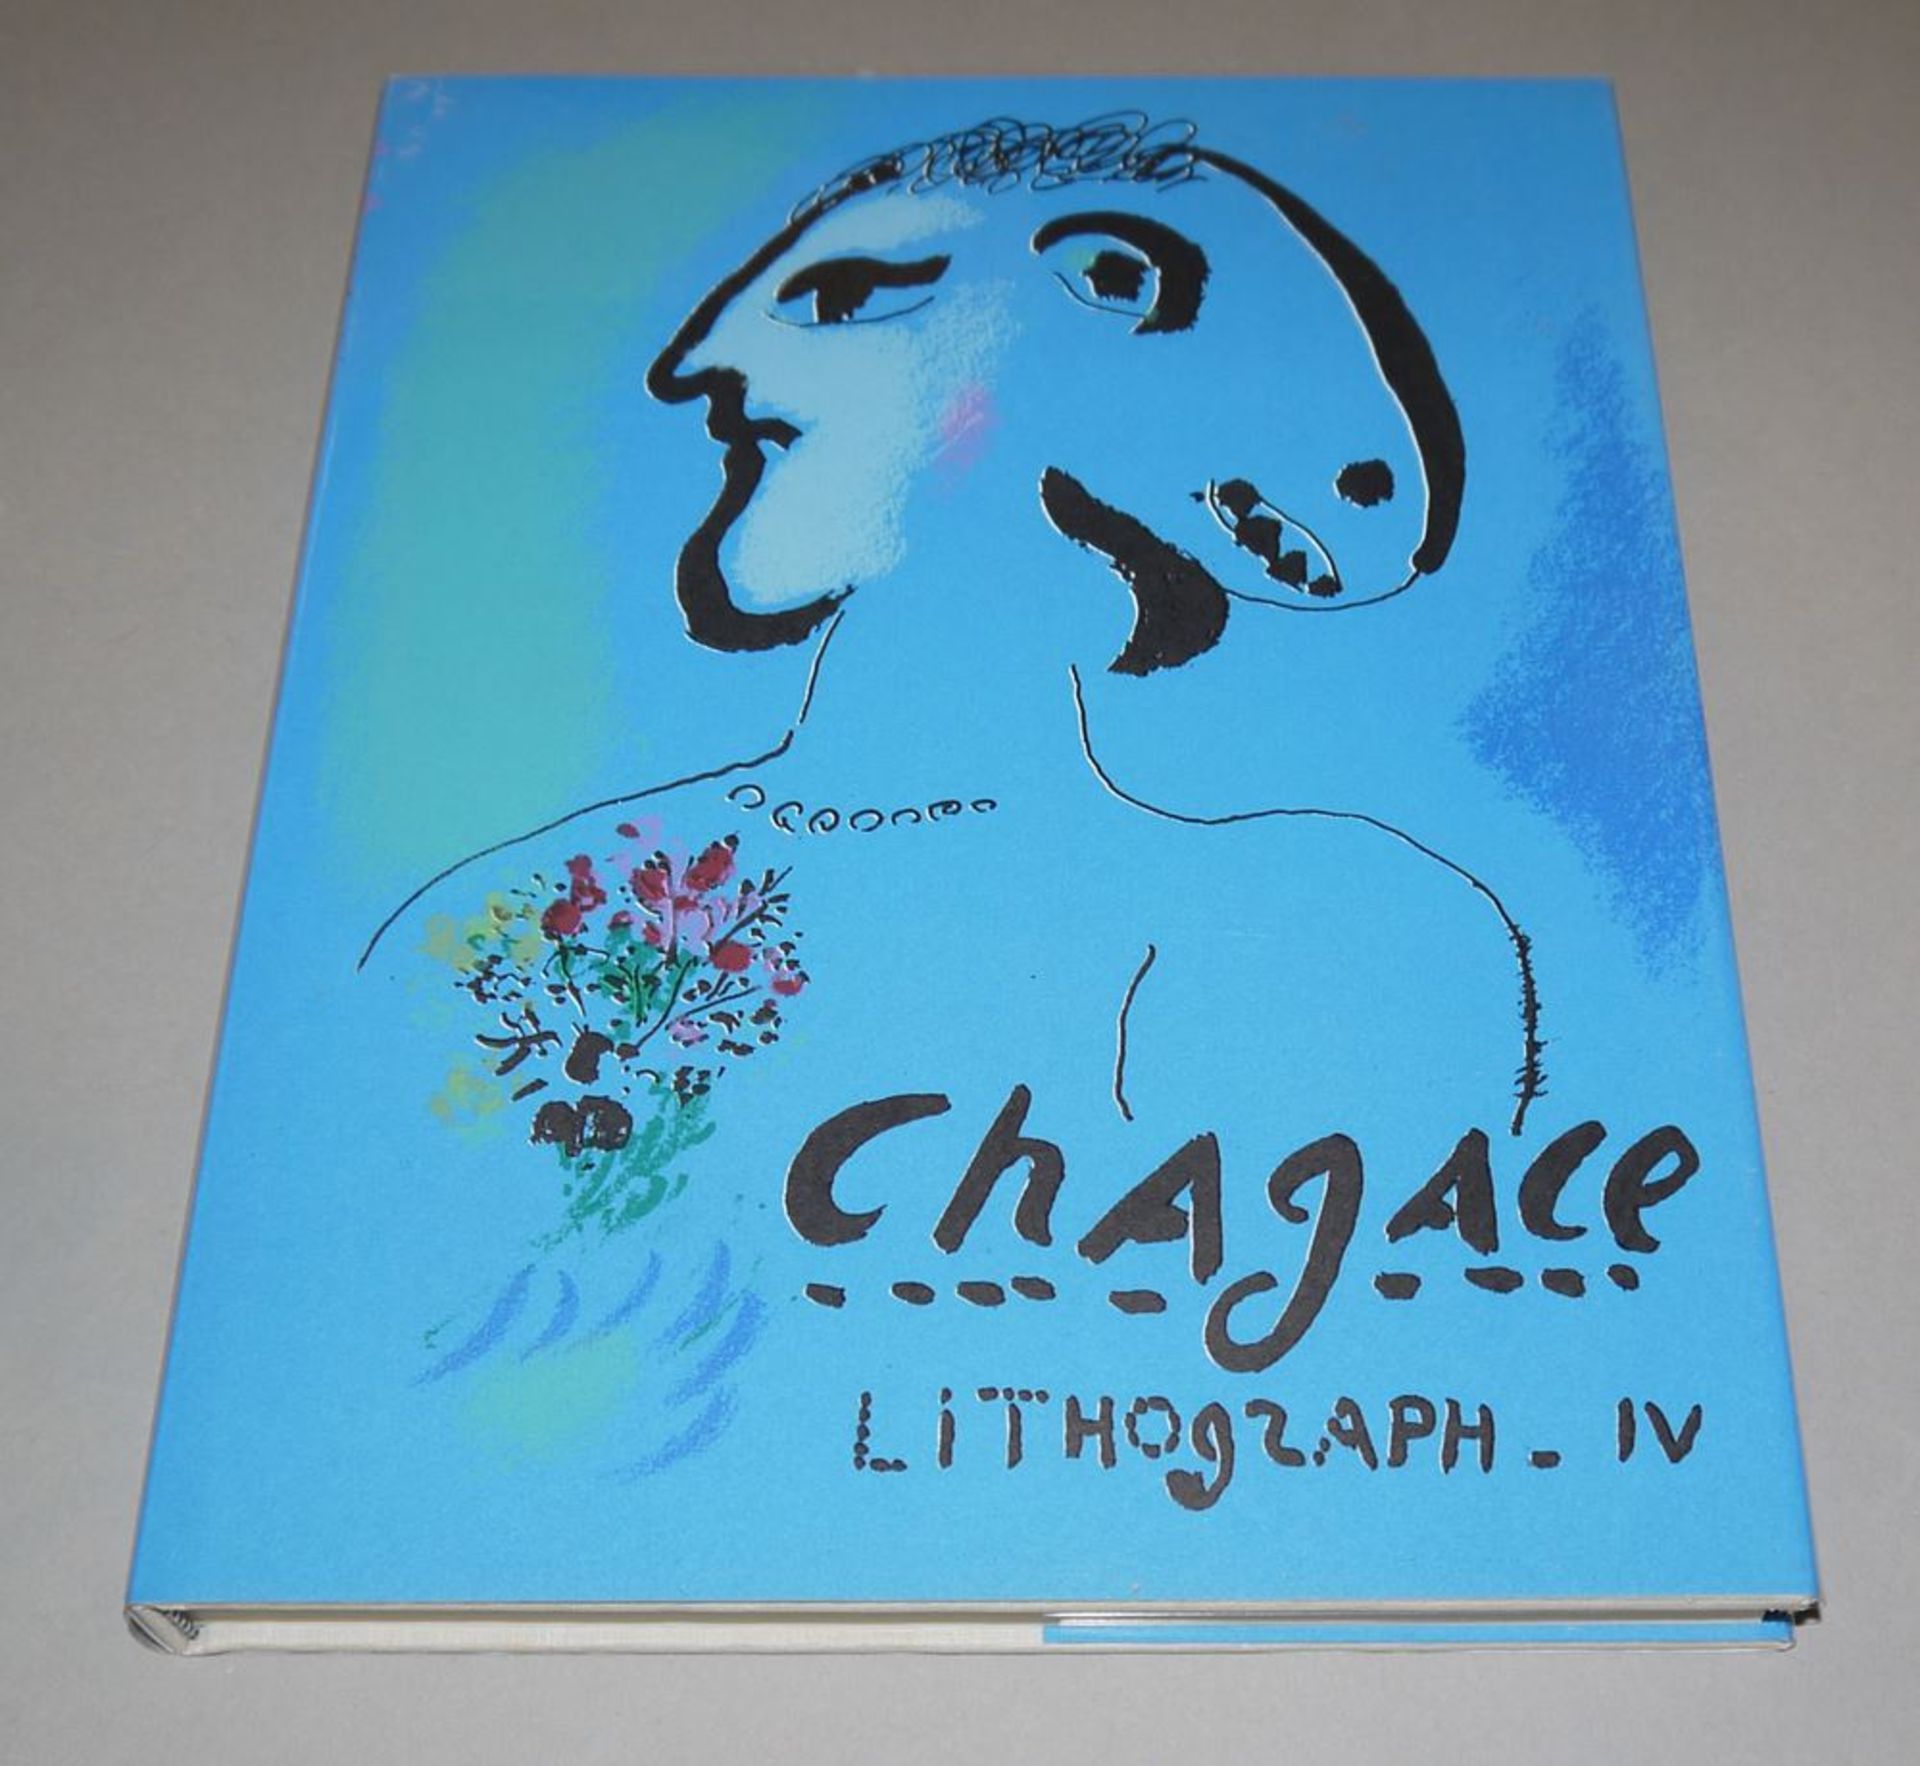 Marc Chagall, "Lithograph IV, 1969-1973", Wvz von 1974 mit den 2 Farblithograph